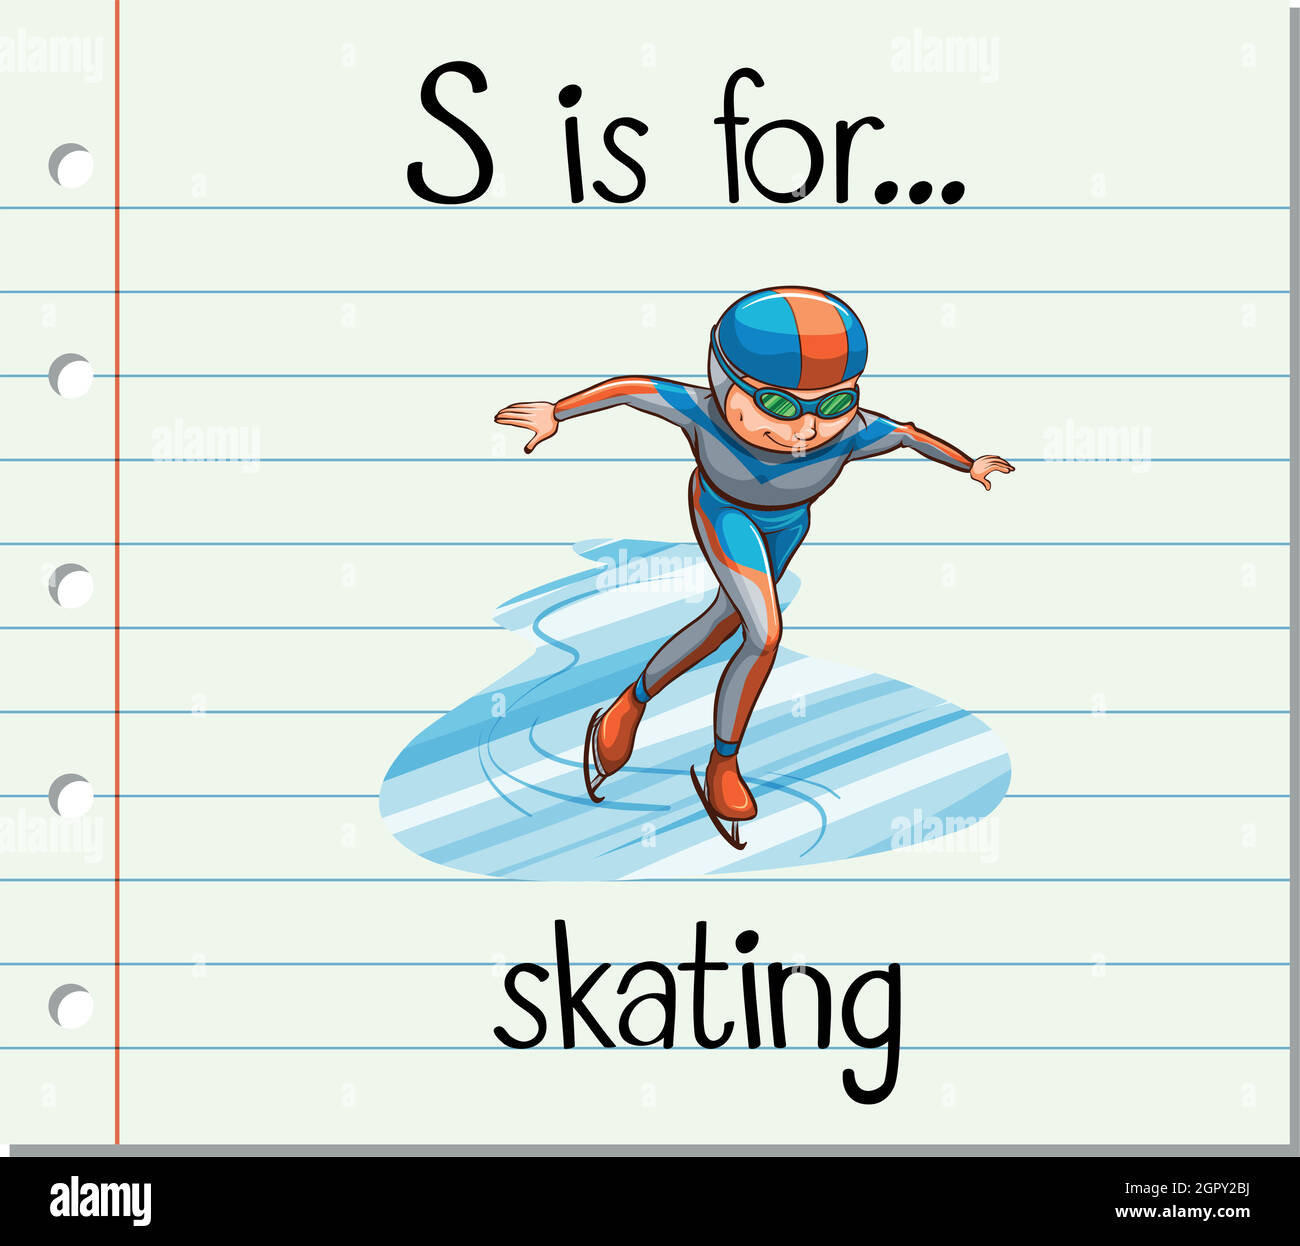 La lettre S de la carte mémoire est destinée au patinage Illustration de Vecteur